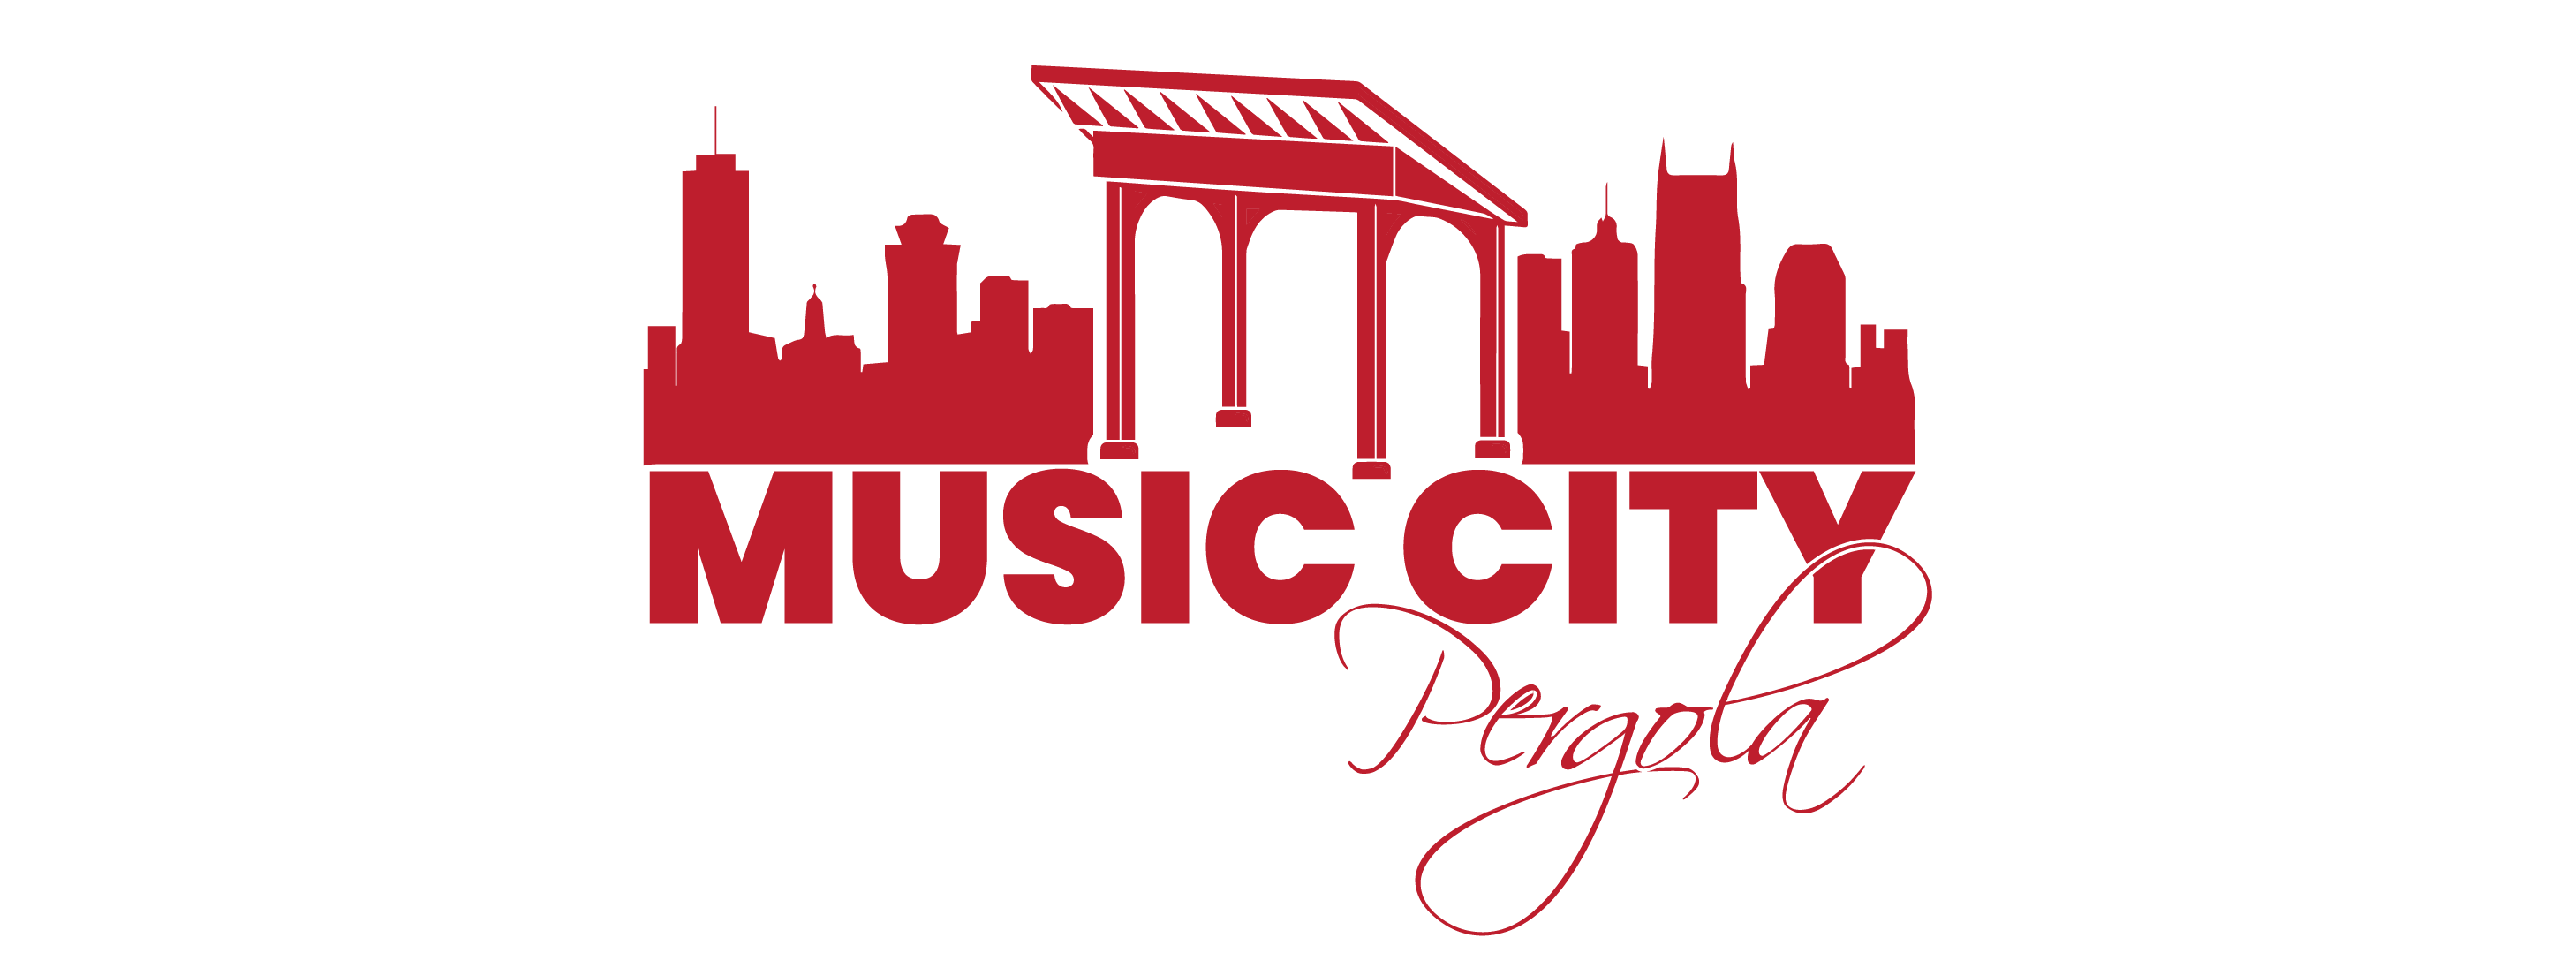 Music City Pergola-01